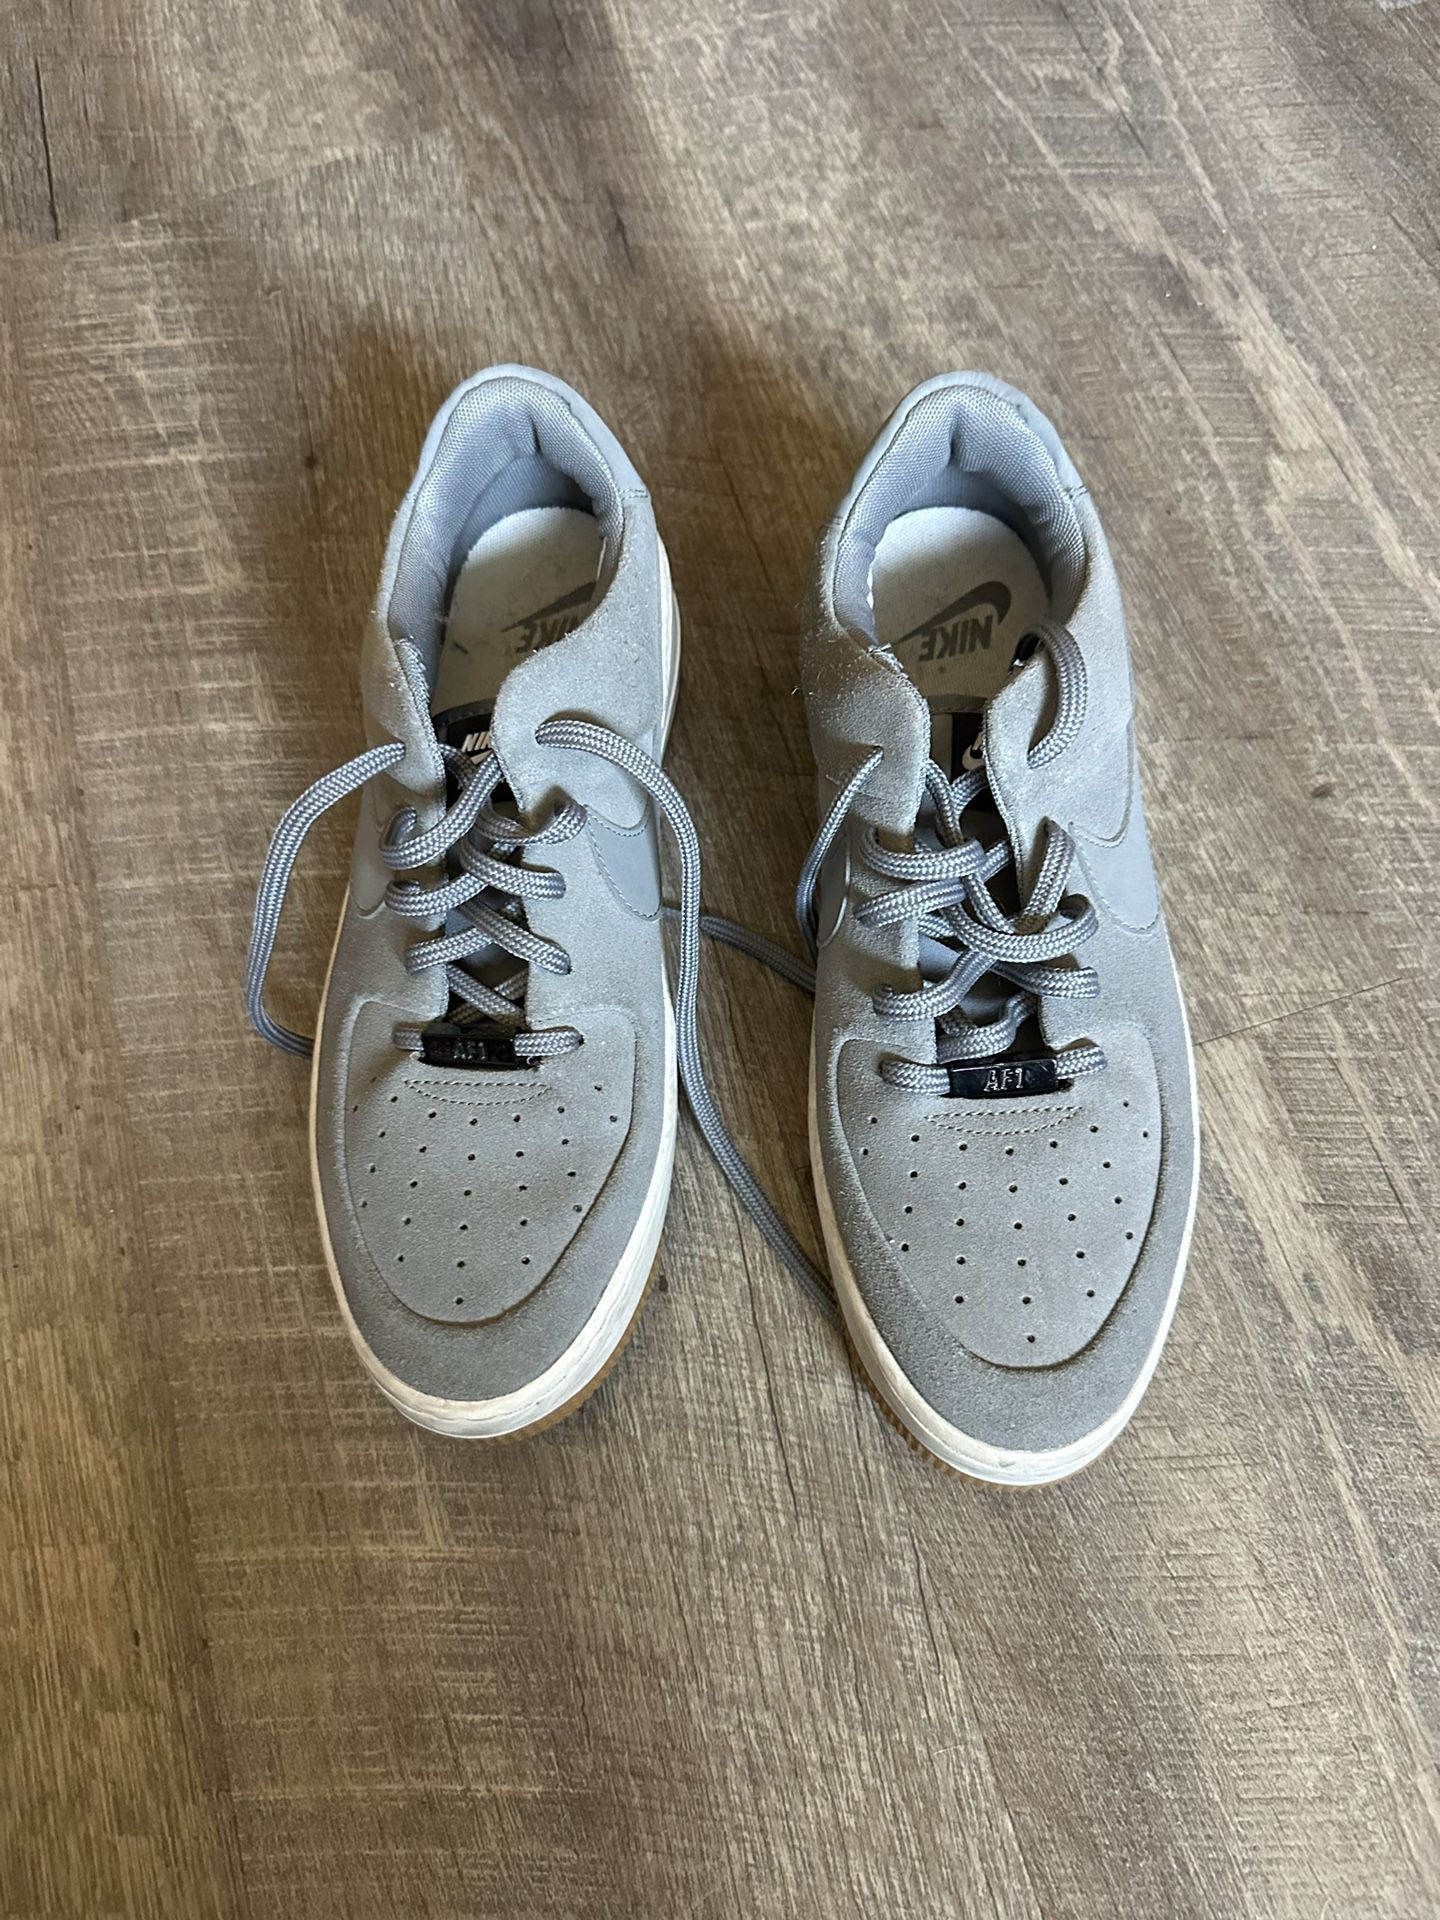 Women’s Nike Gray Shoes 